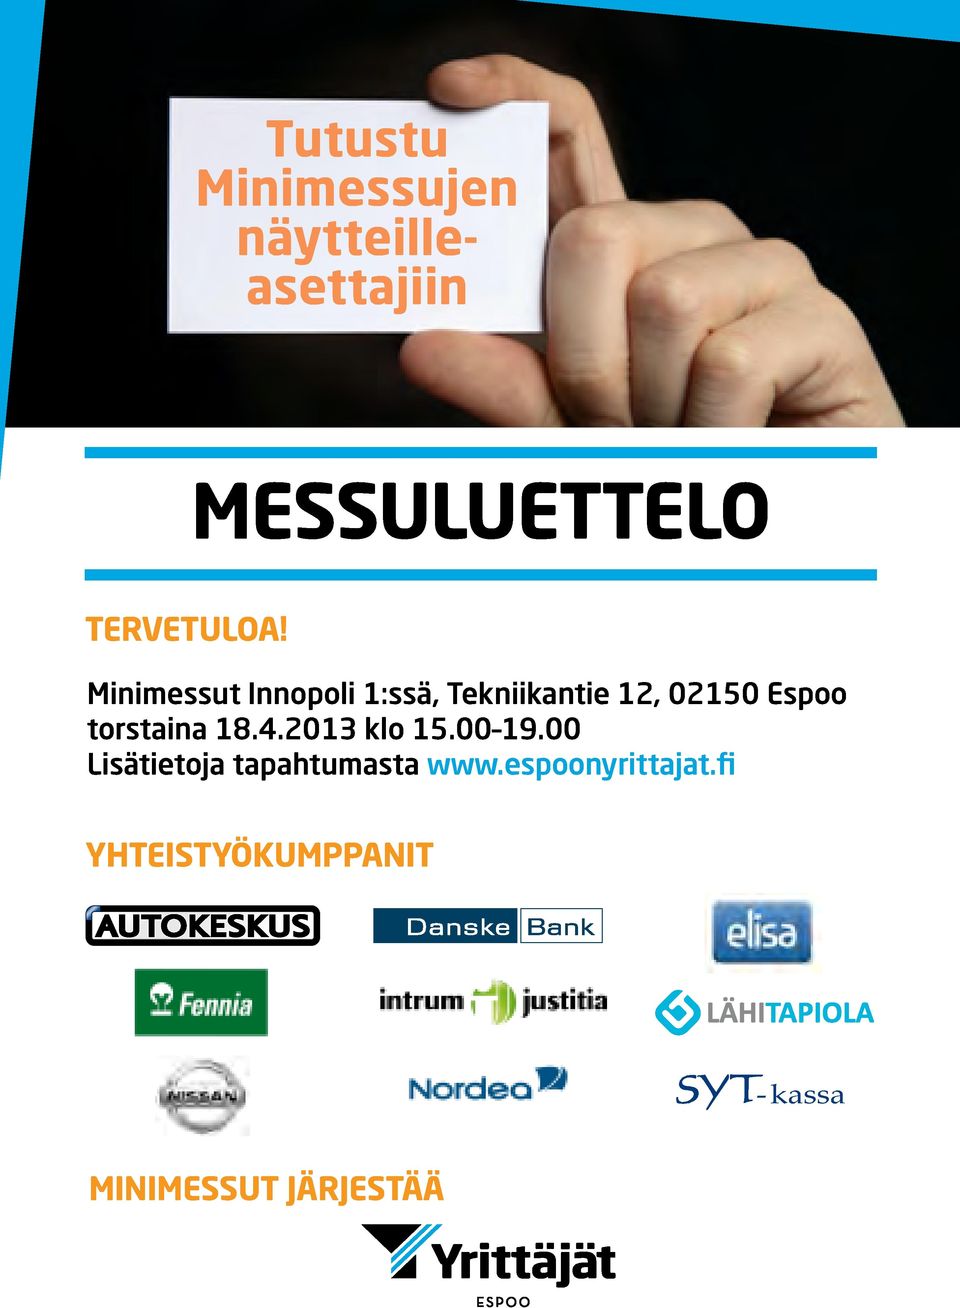 Minimessut Innopoli 1:ssä, Tekniikantie 12, 02150 Espoo